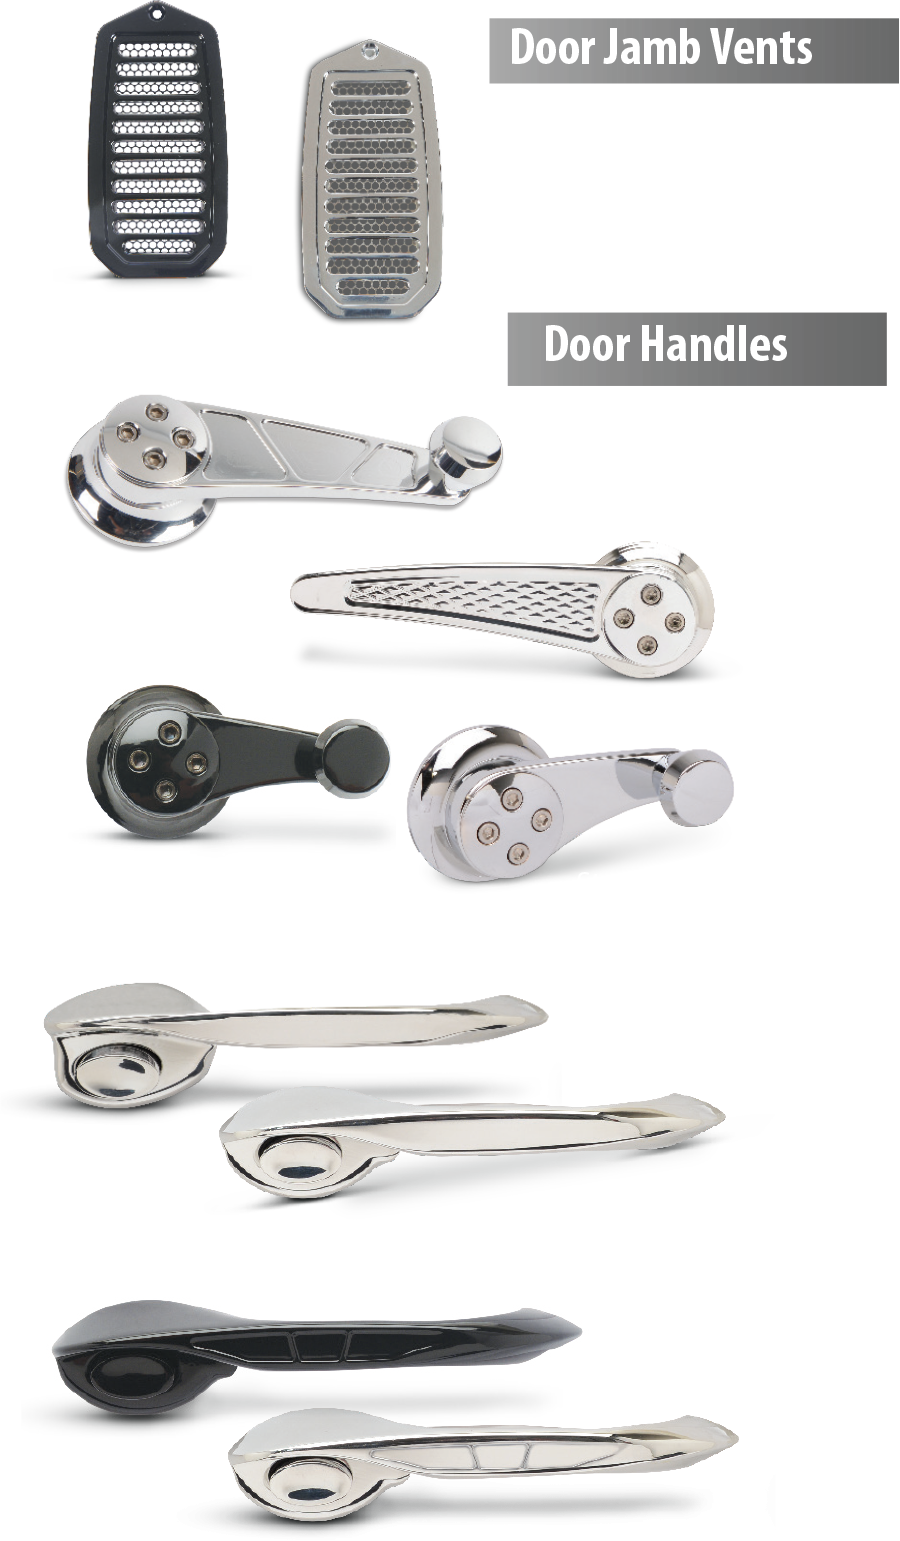 Door jamb vents and door handles